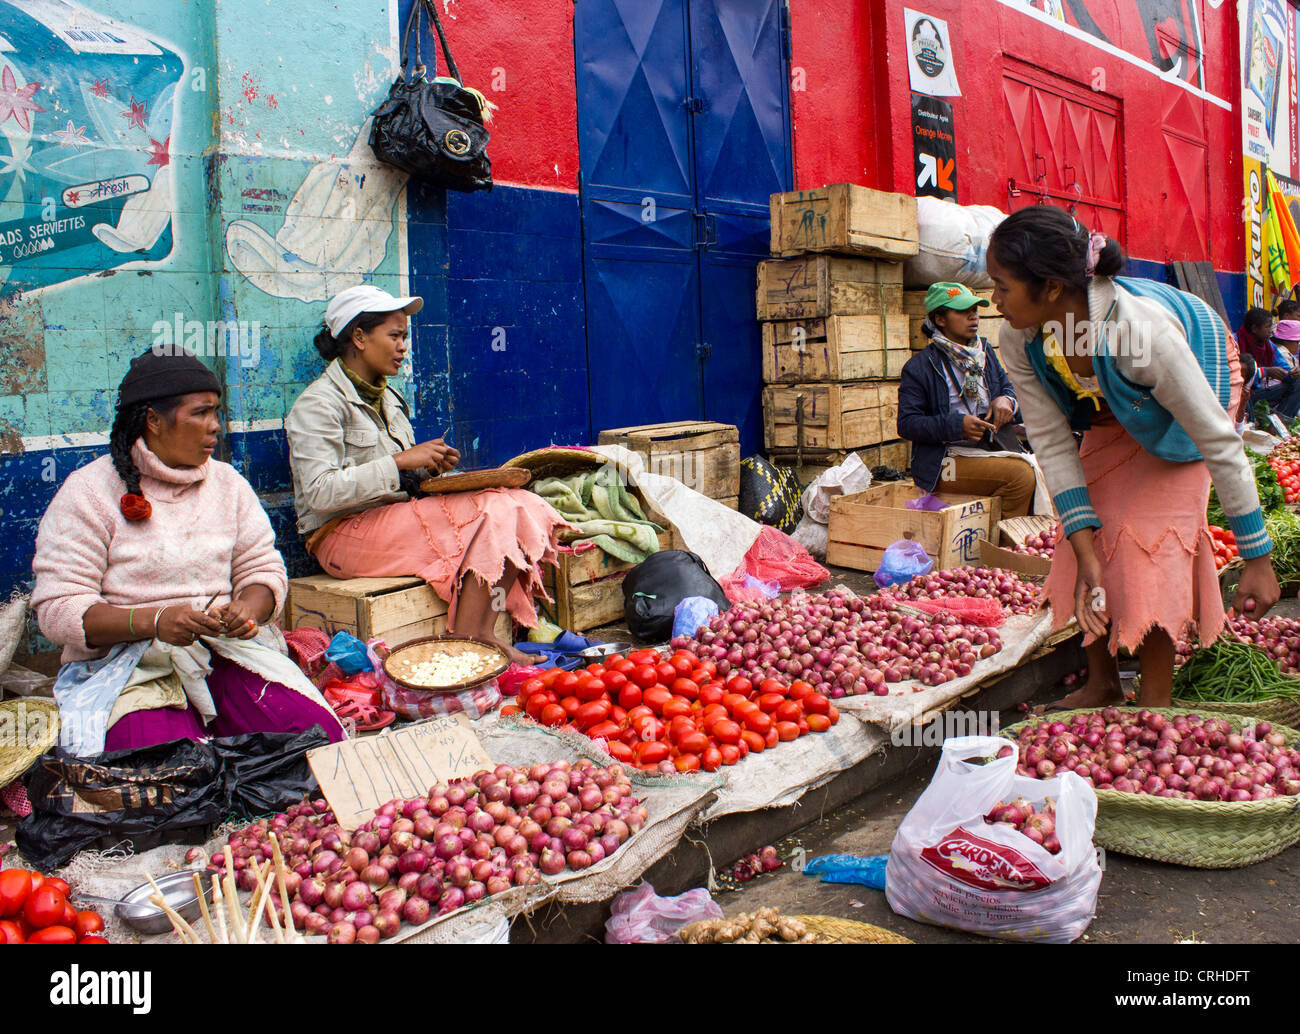 Zwiebeln und Tomaten Verkäufer, Markt Analakely, Antananarivo, Madagaskar Stockfoto